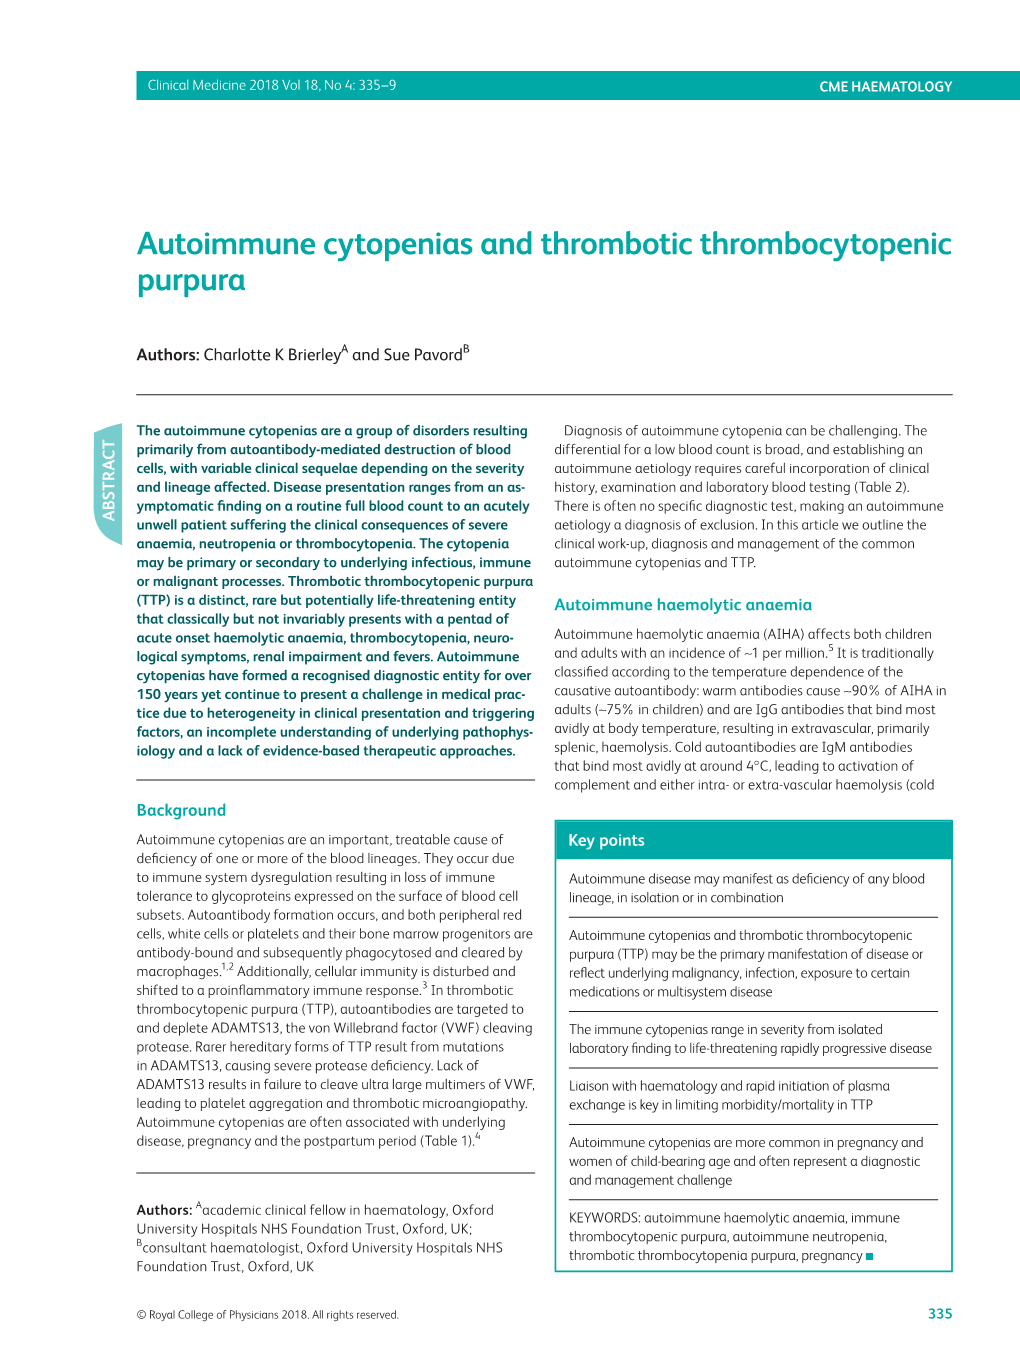 Autoimmune Cytopenias and Thrombotic Thrombocytopenic Purpura